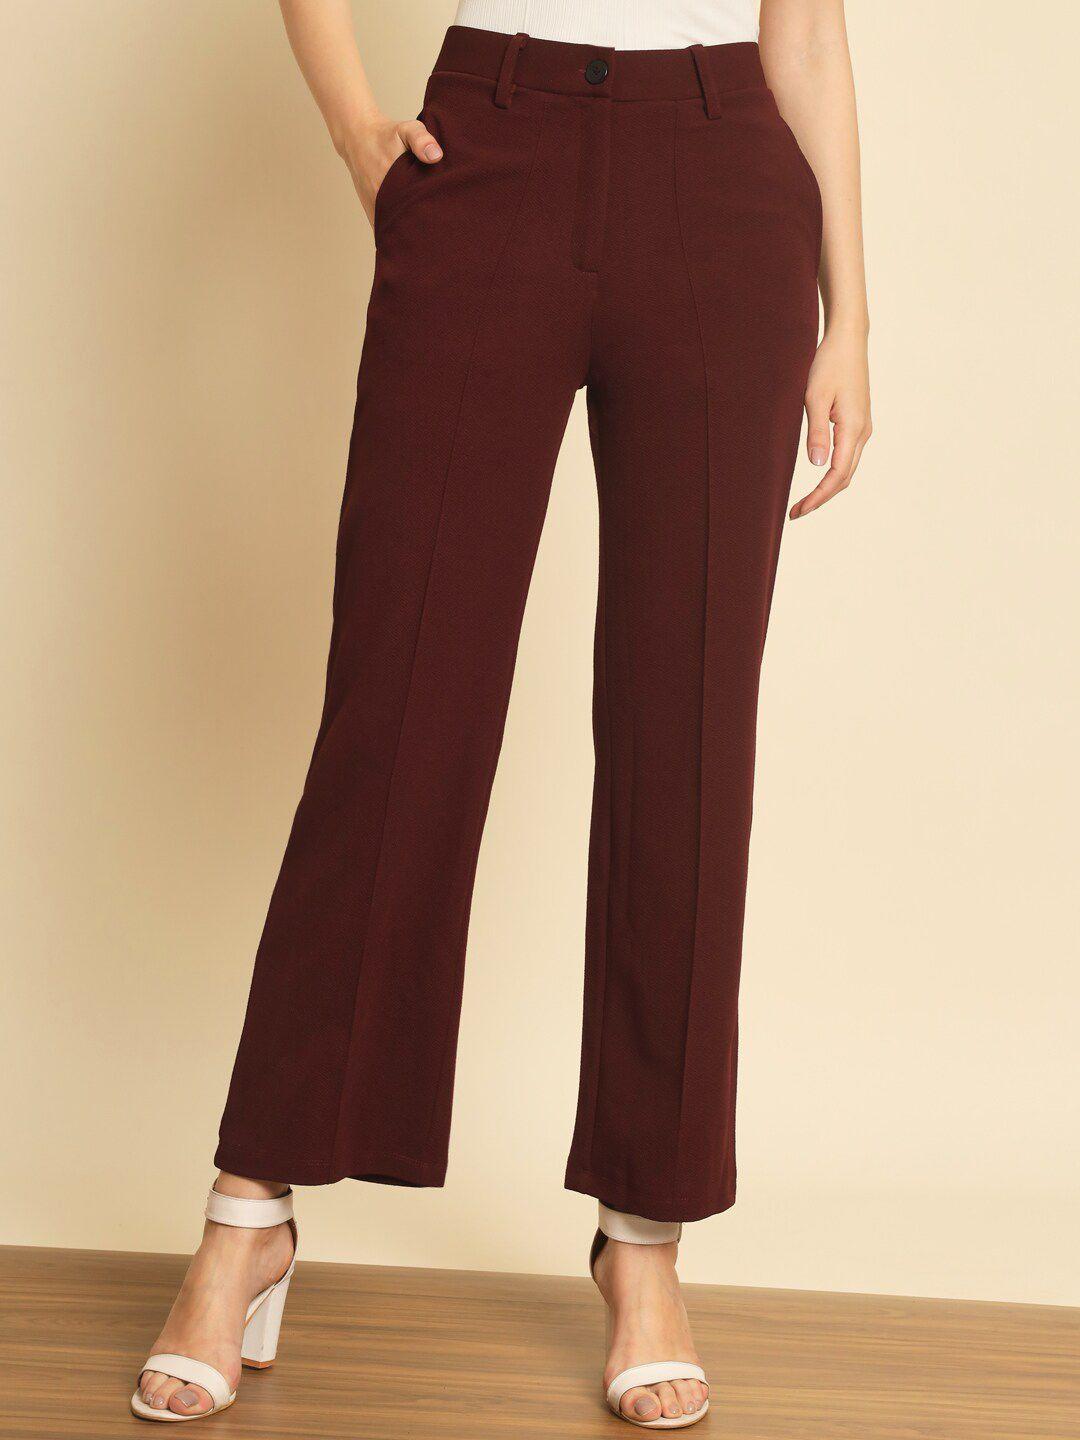 baesd women maroon smart trousers